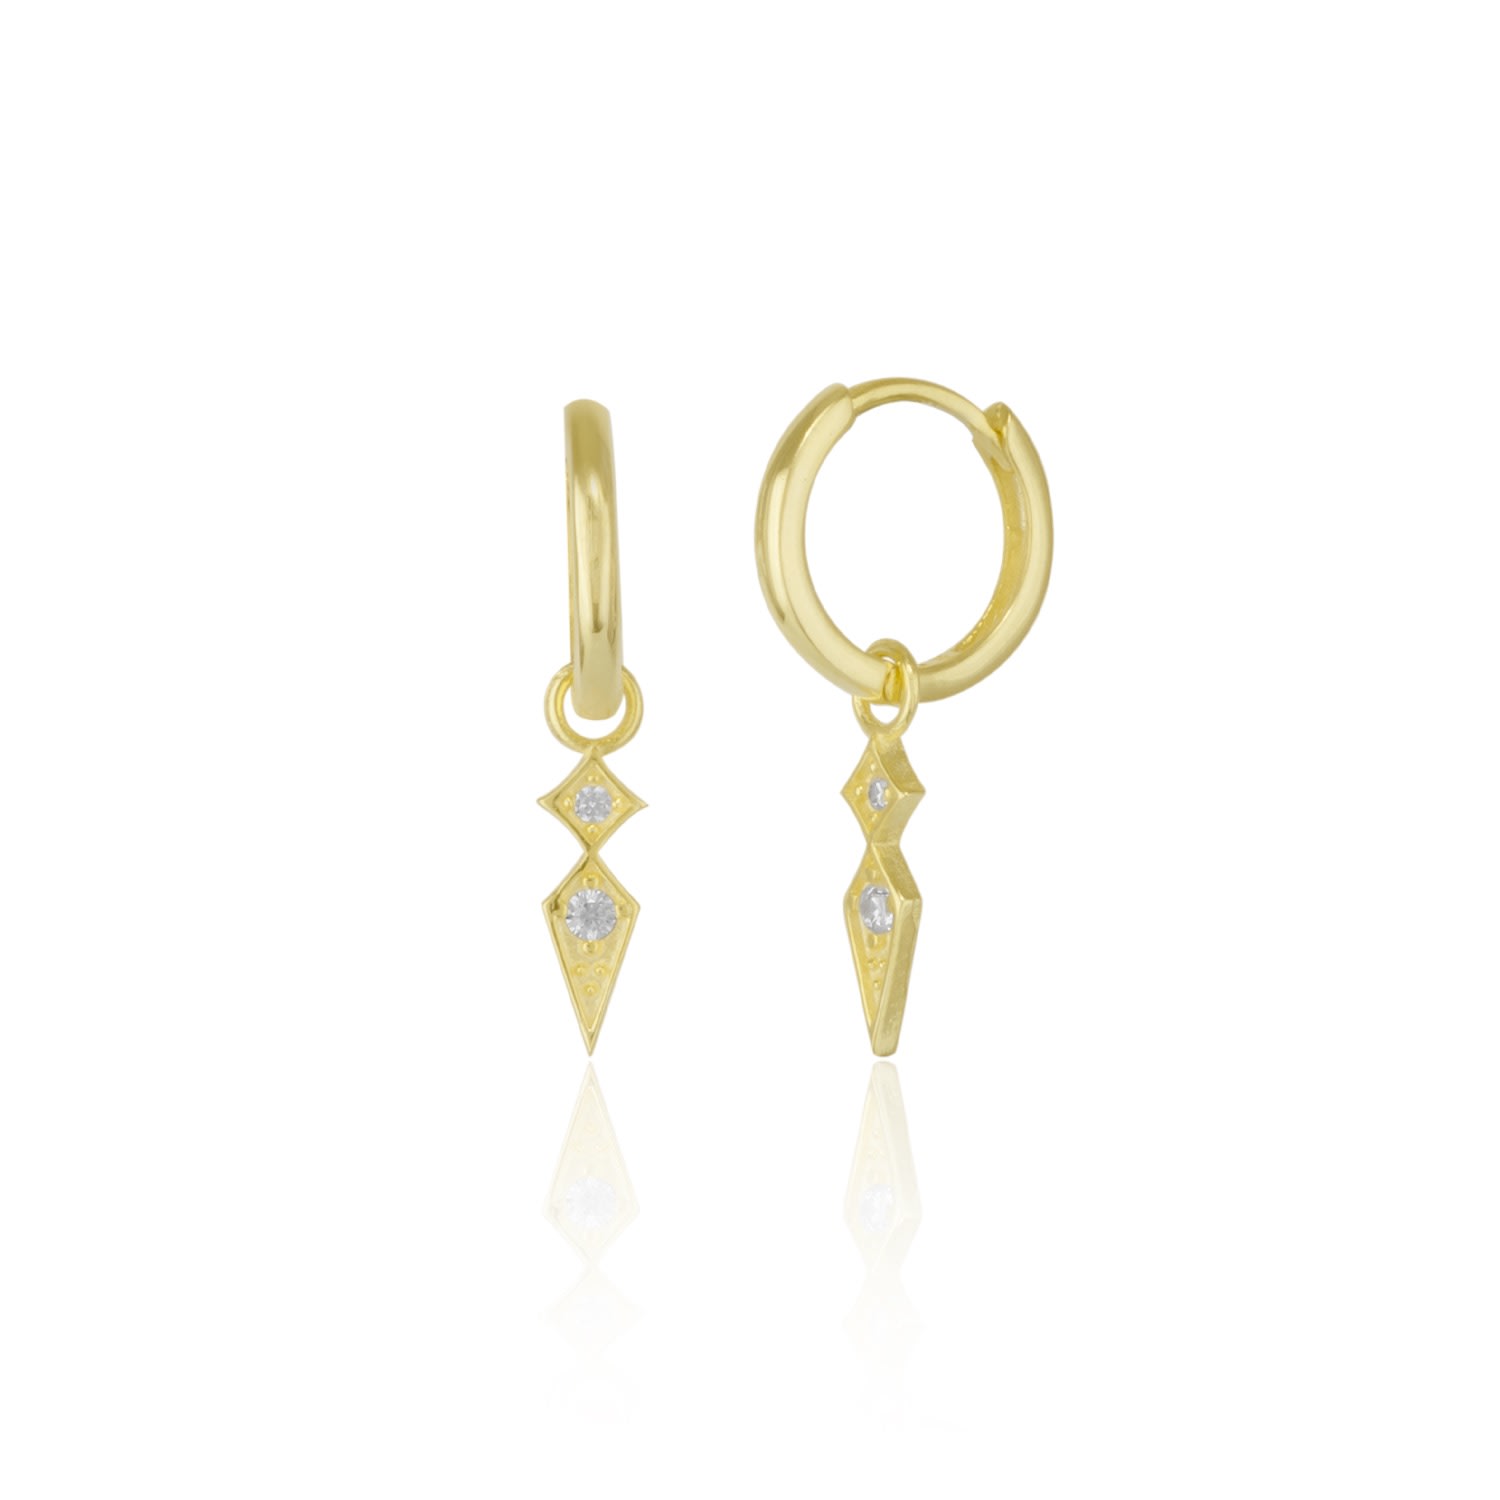 Spero London Women's Sterling Silver Rhombus Drop Earring - Gold